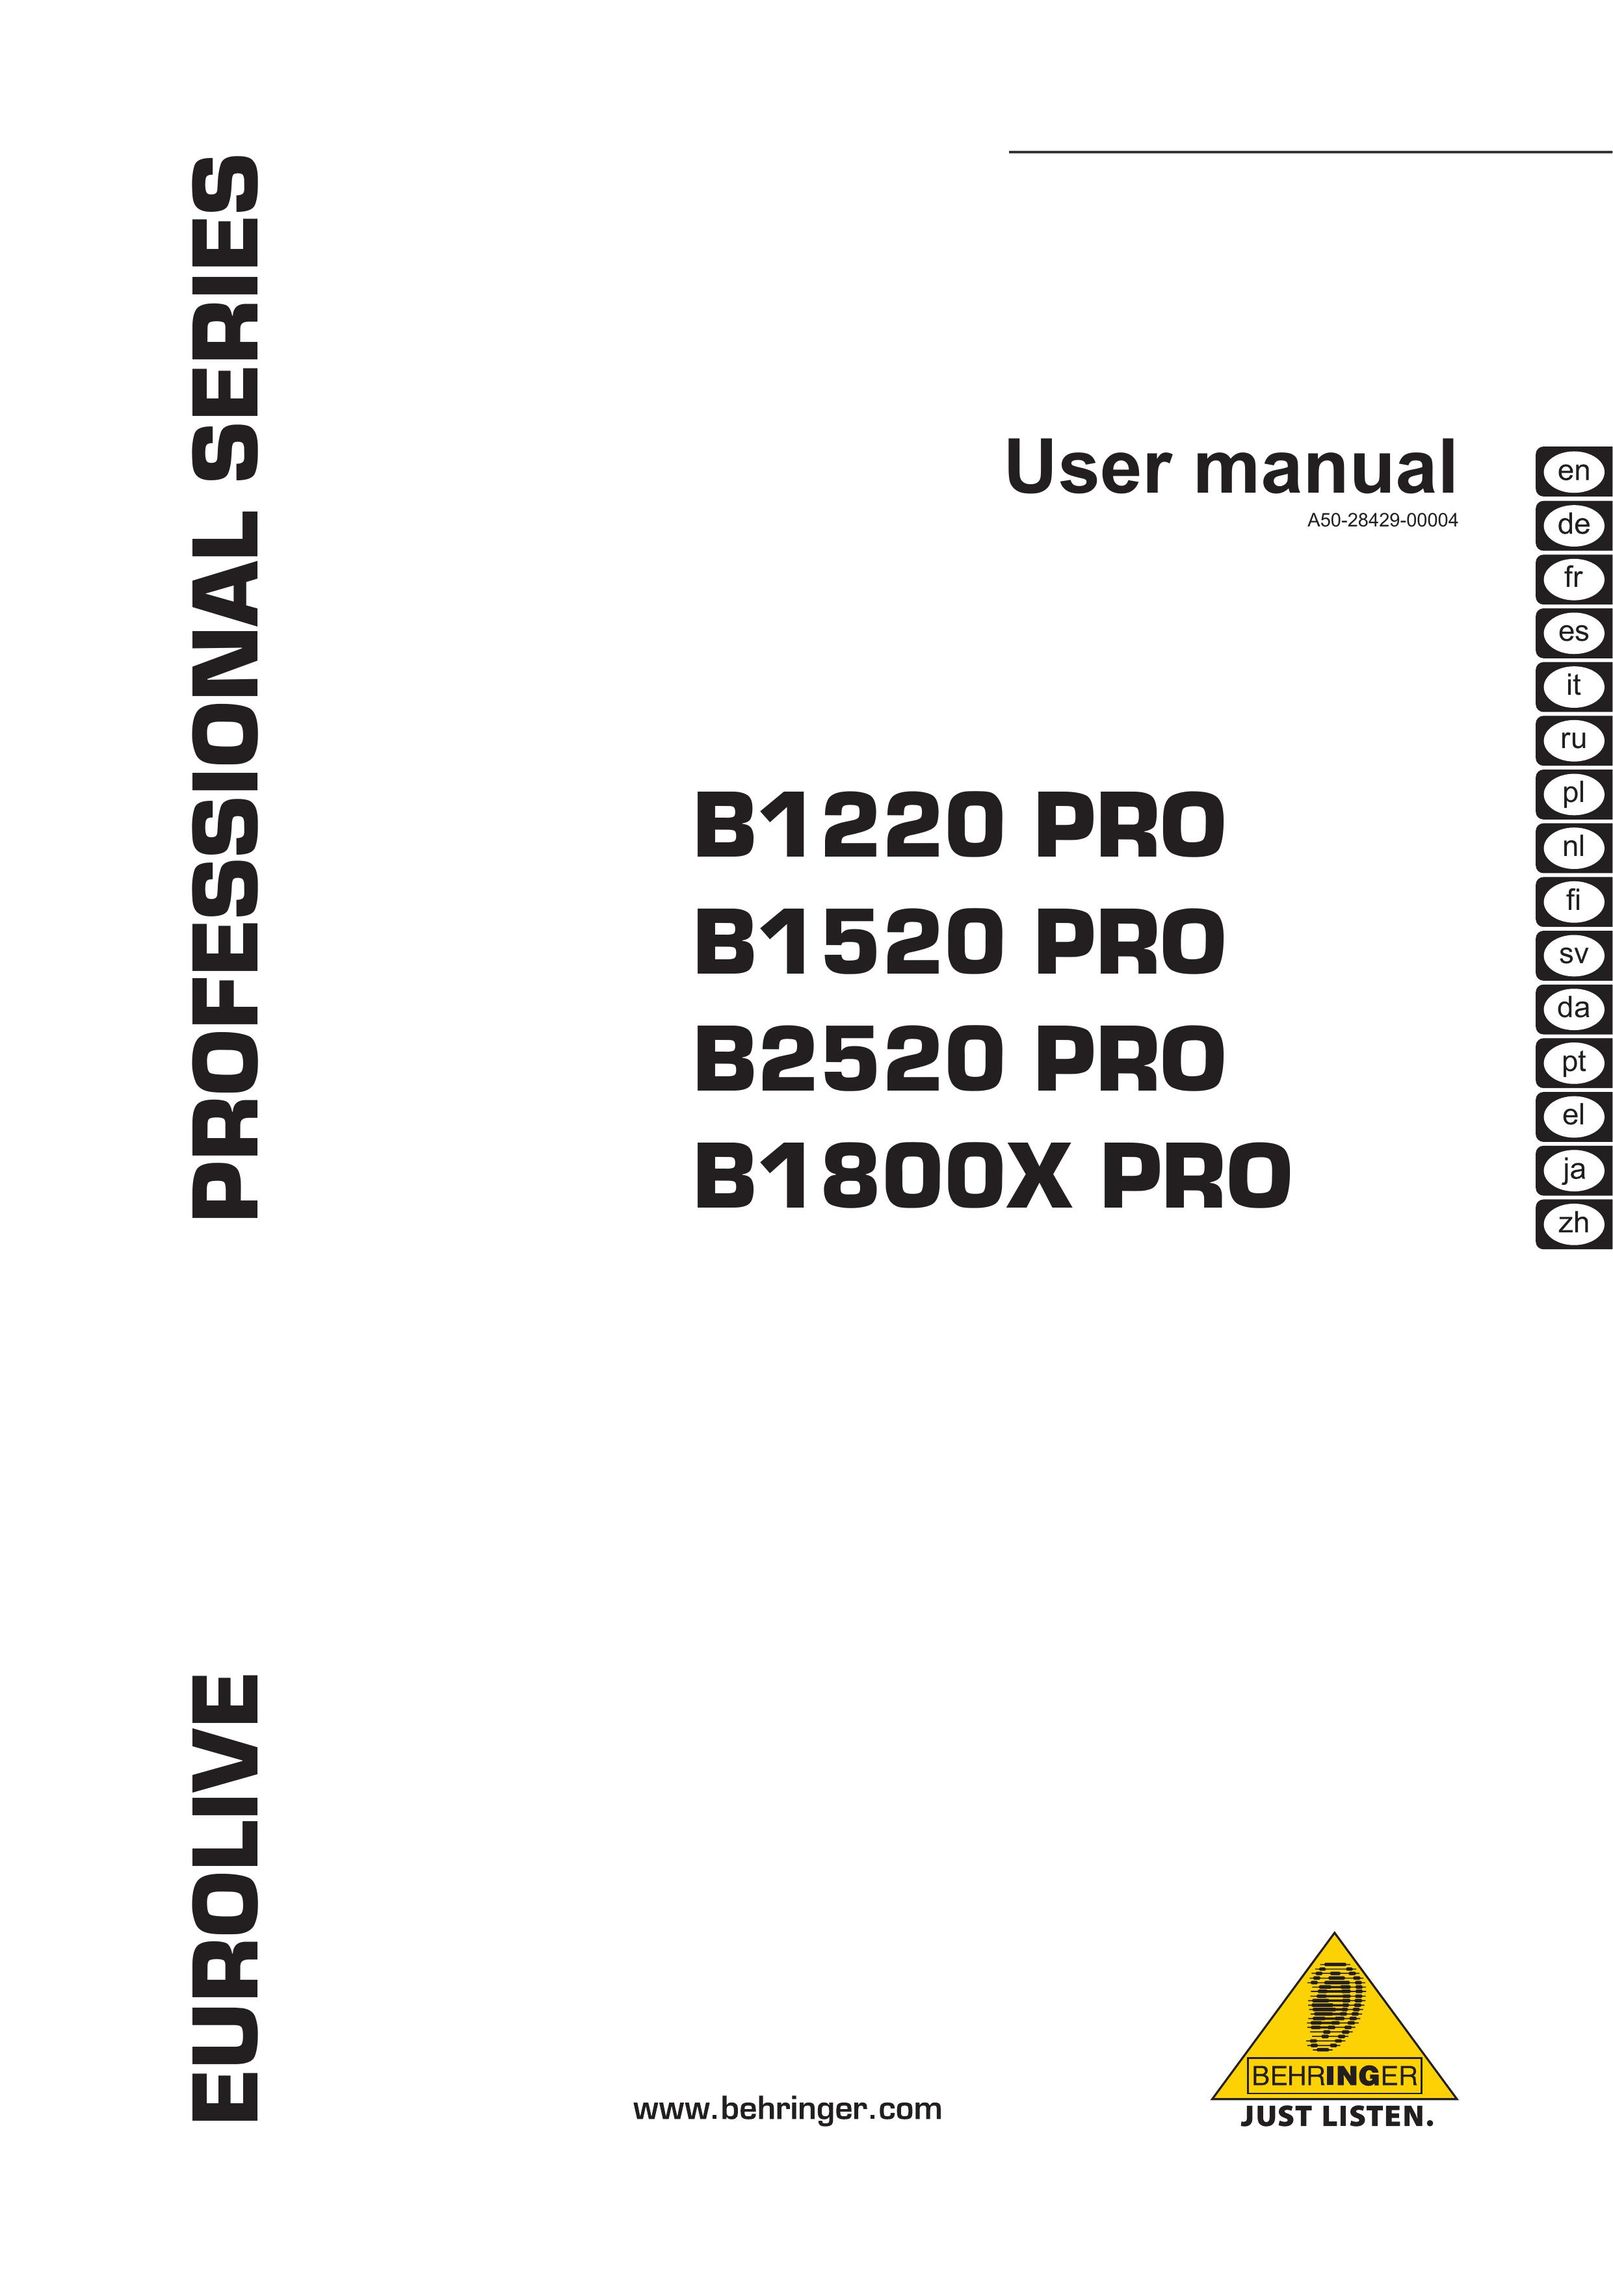 Behringer B1800X PRO Speaker User Manual